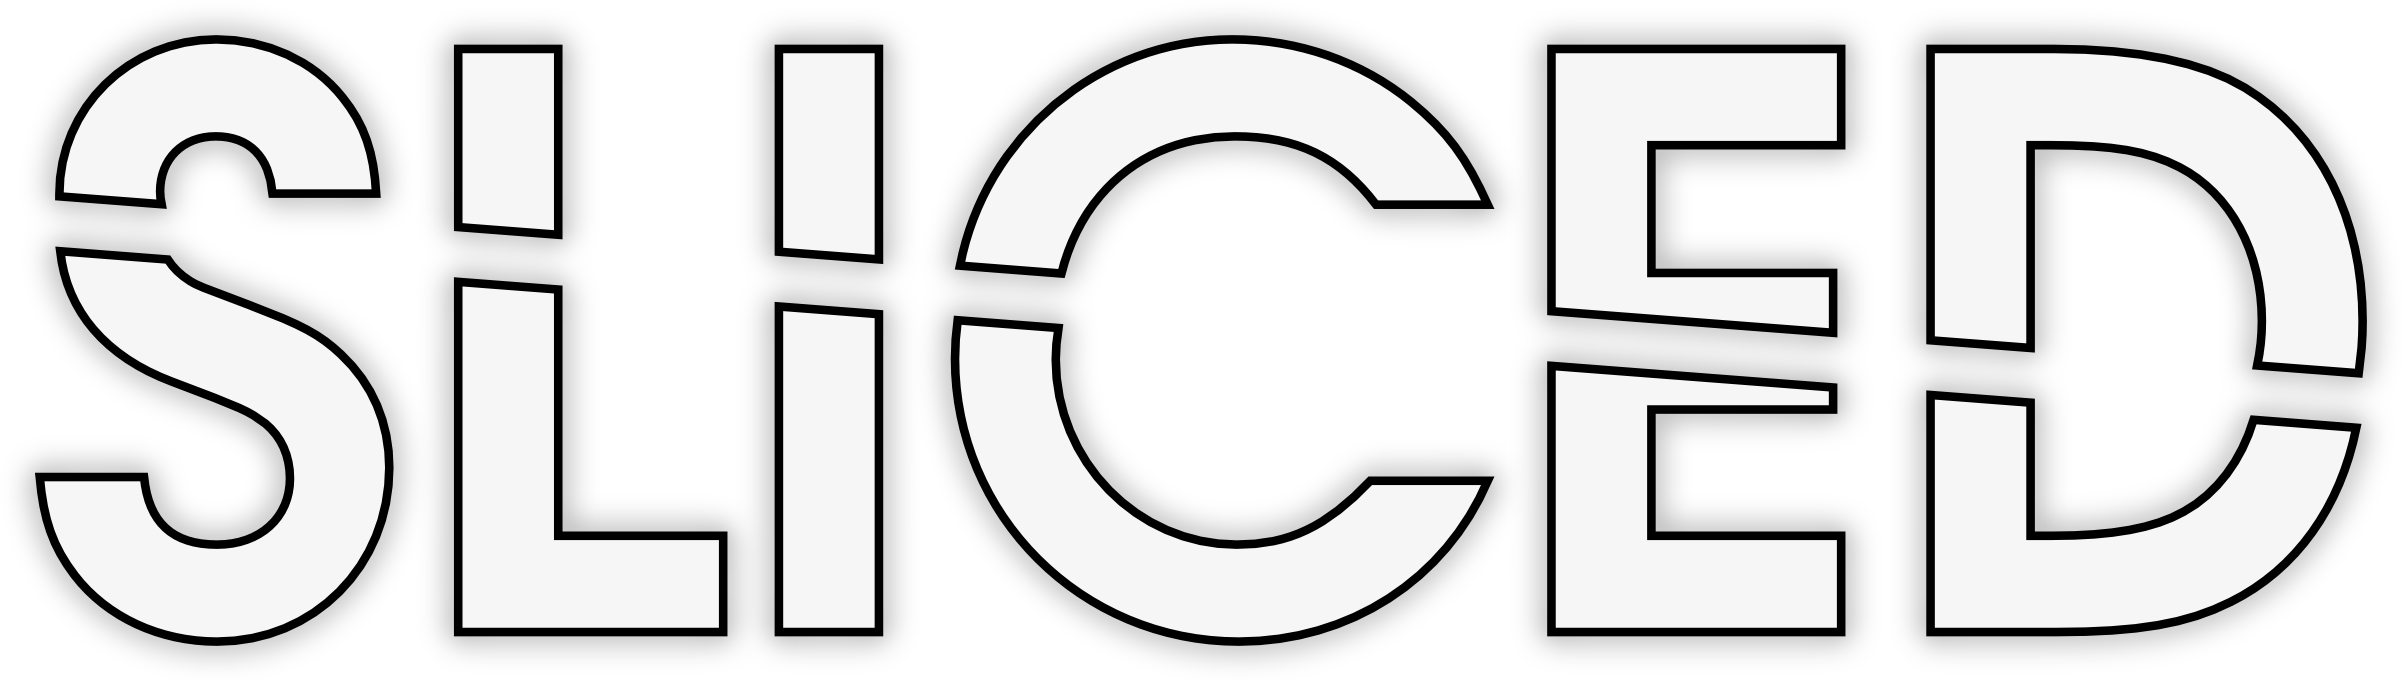 SLICED logo